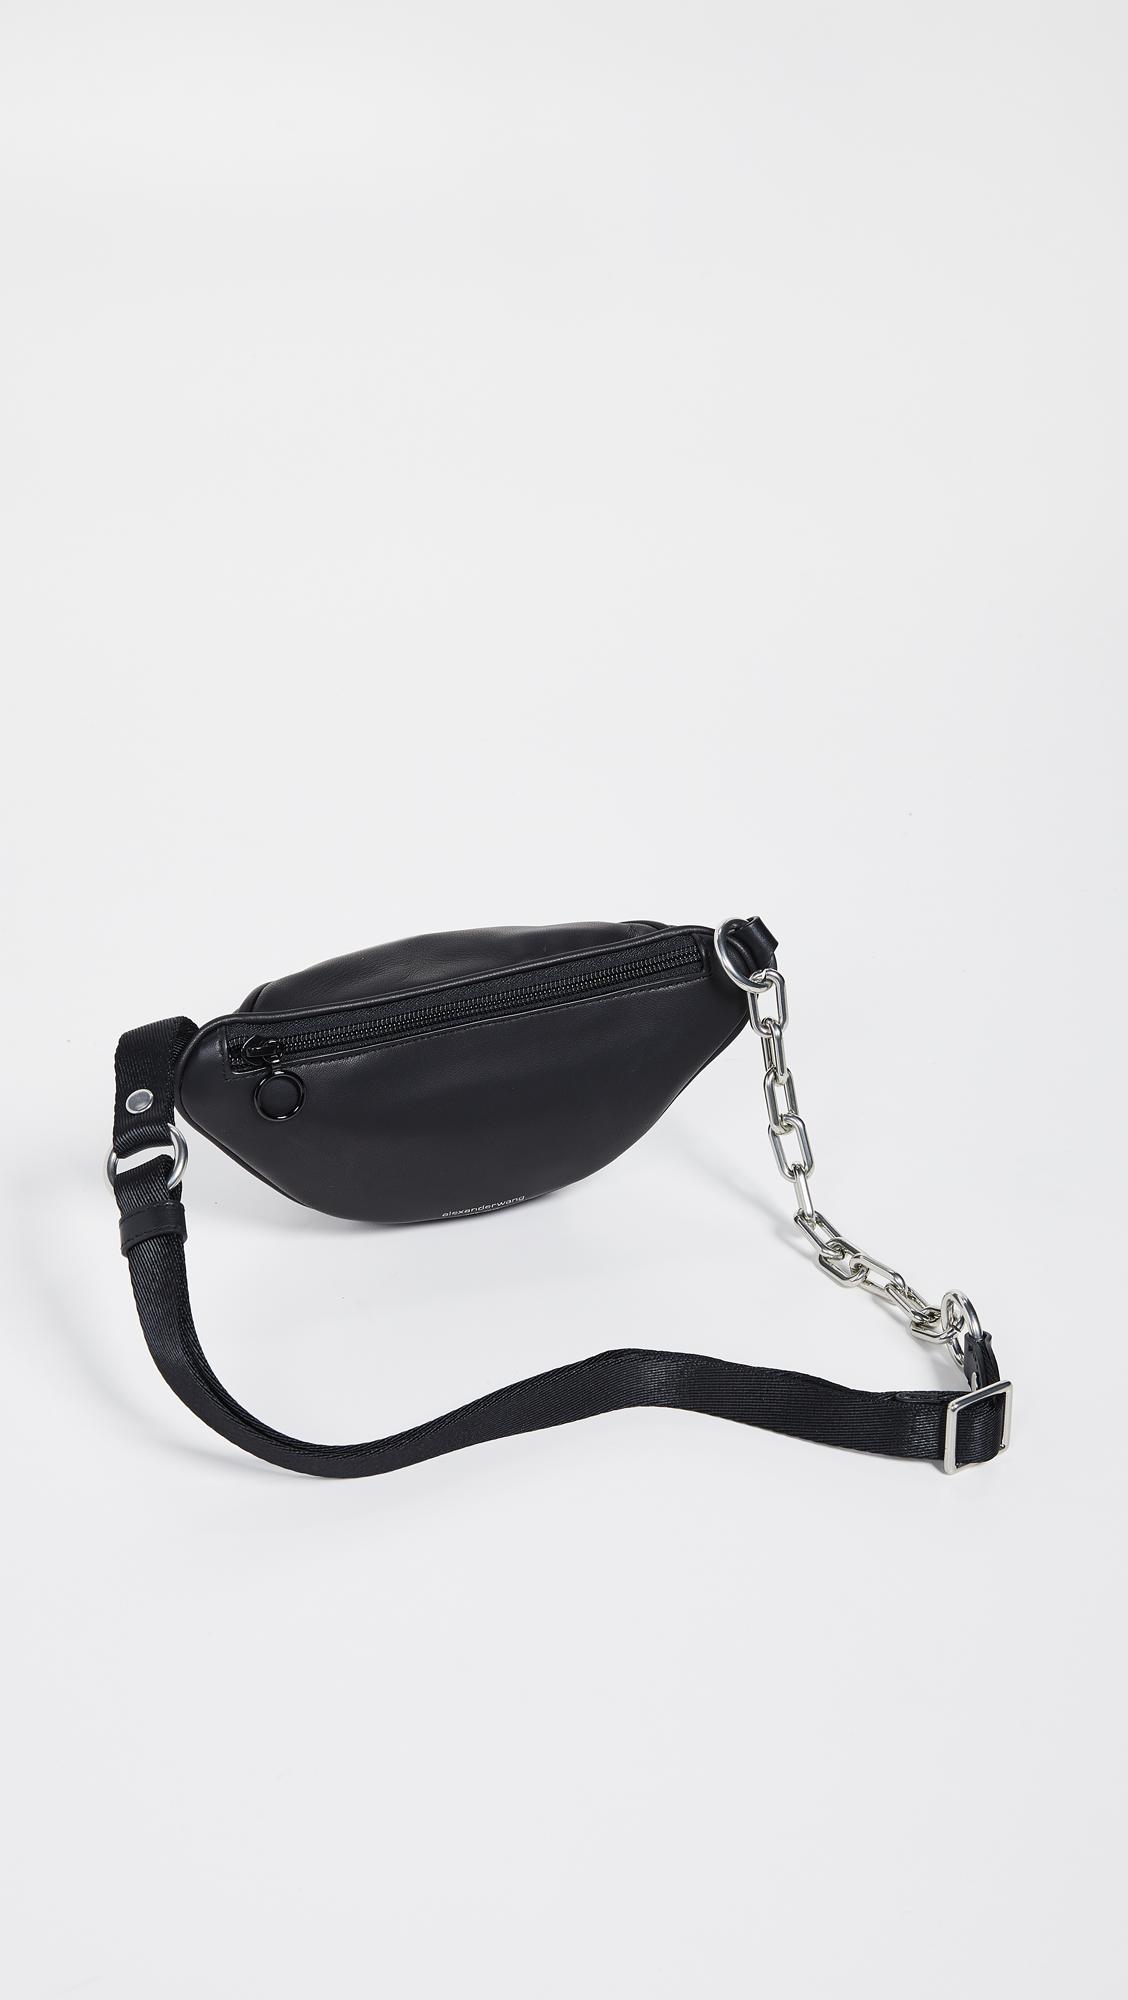 Alexander Wang Leather Attica Soft Mini Fanny Crossbody Bag in Black - Lyst